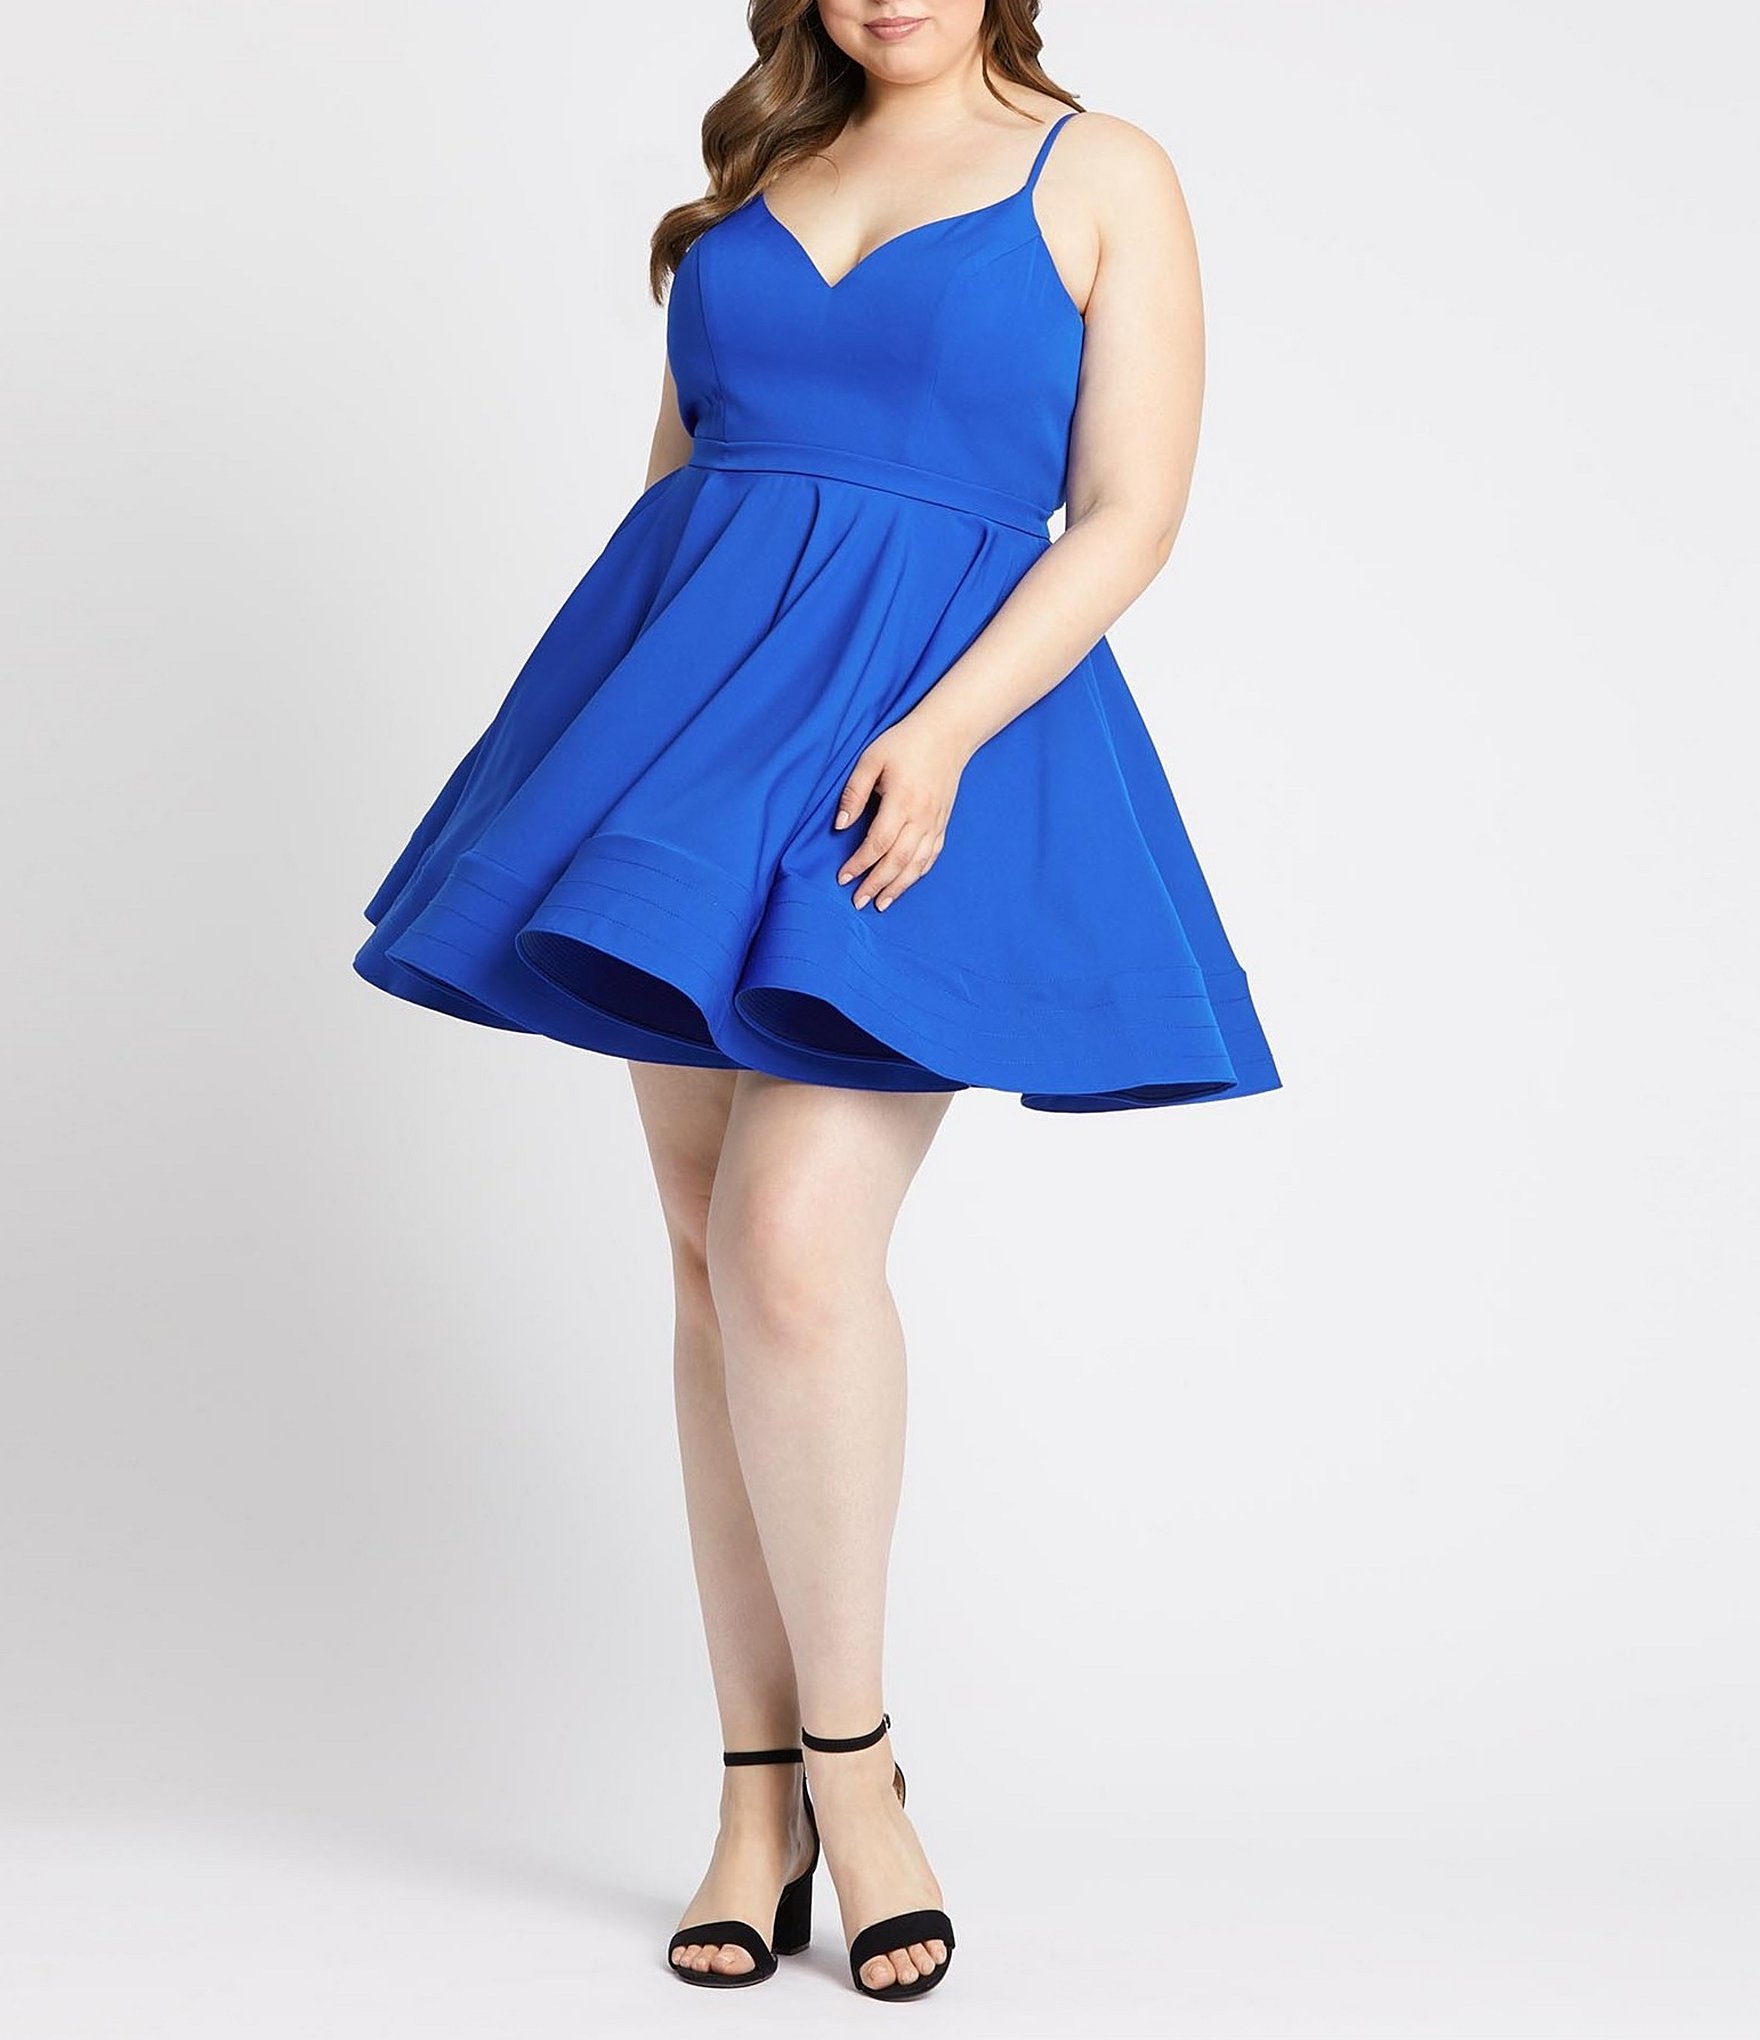 royal blue dress: Women's Plus Size ...